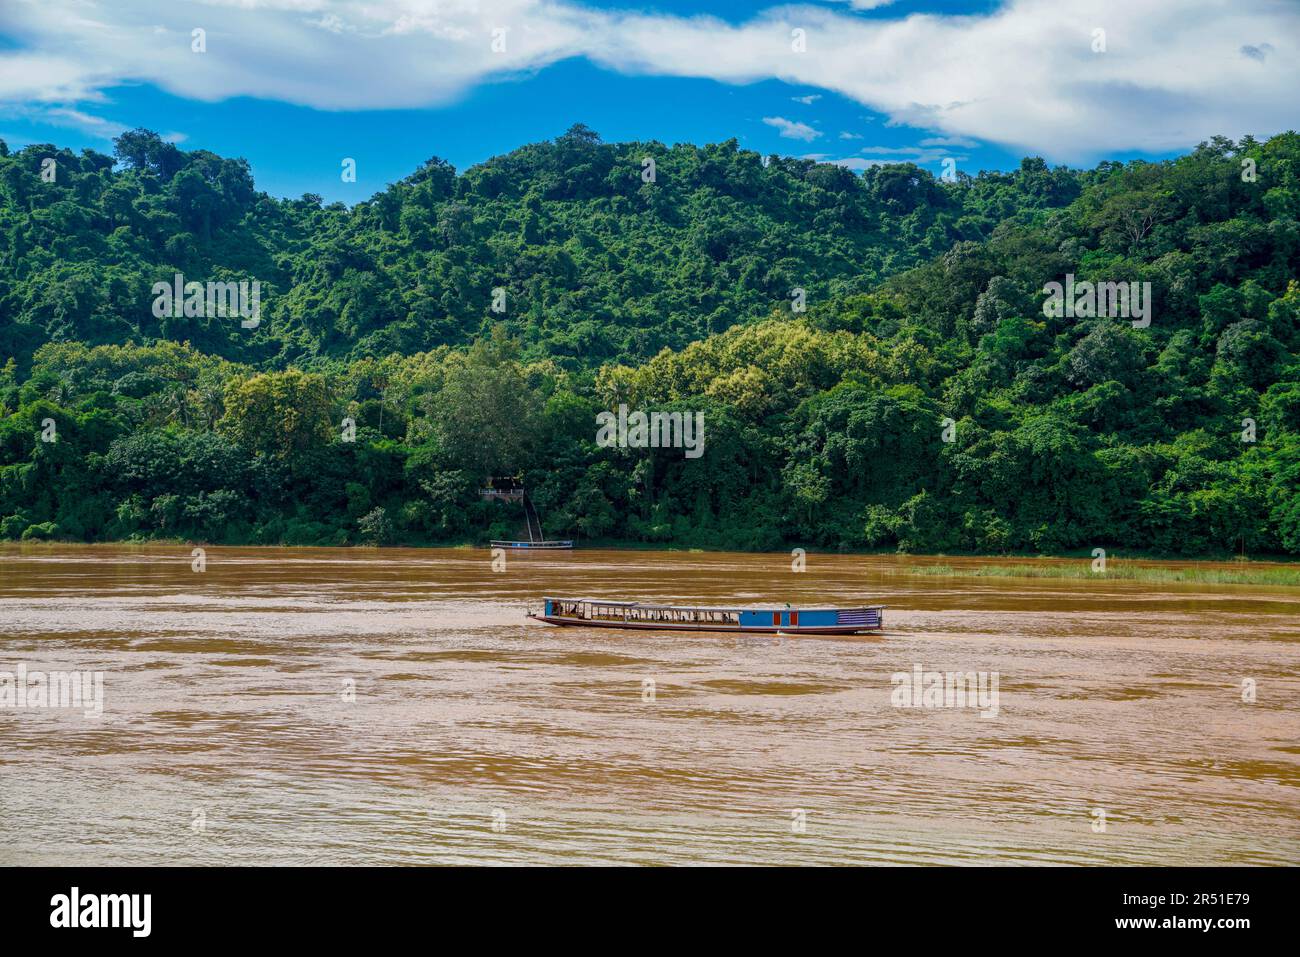 Un bateau lent traditionnel du Laos glisse à travers le bassin inférieur boueux du Mékong, entouré par la jungle tropicale luxuriante et la sérénité post-pluviale. Banque D'Images